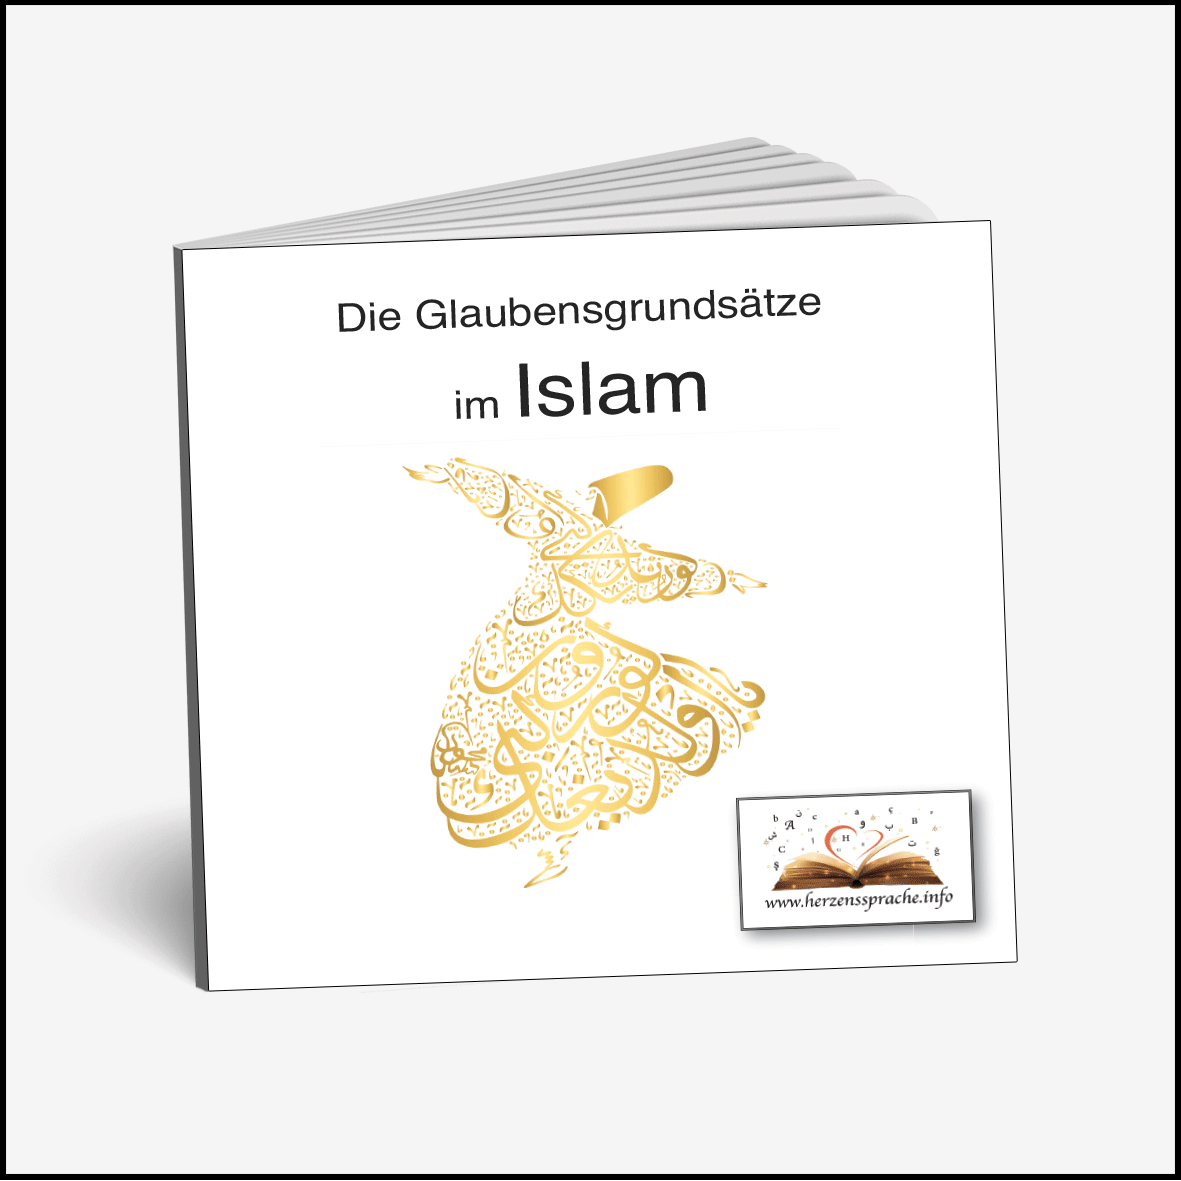 Glaubensgrundsätze im Islam als E-Book